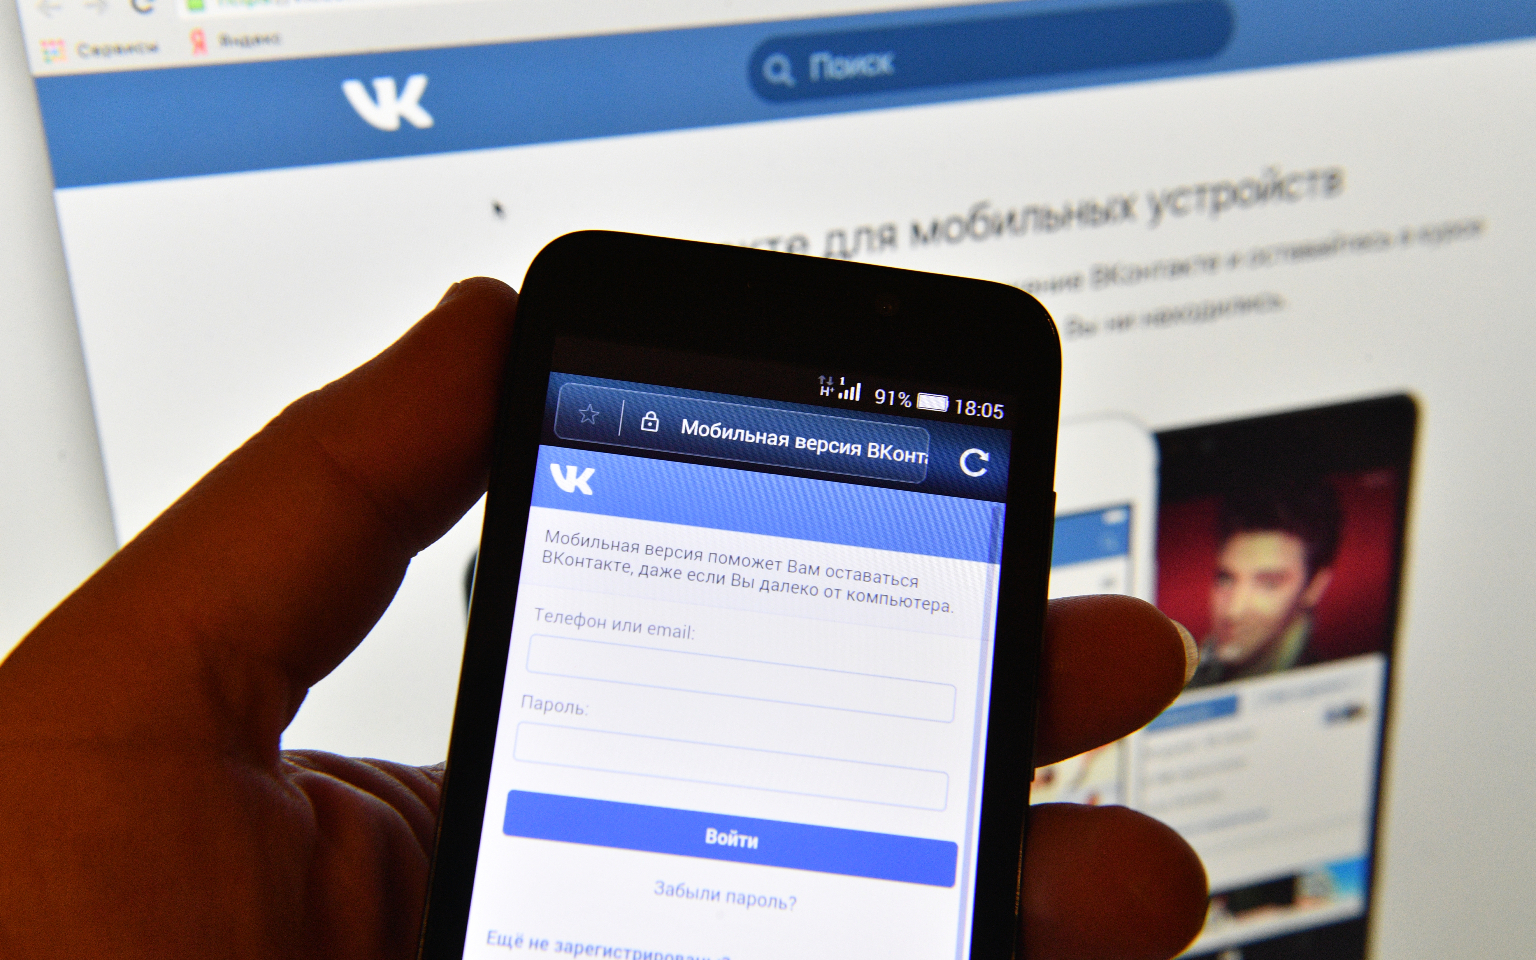 СМИ узнали о планах «ВКонтакте» проверять книги на пиратство при загрузке